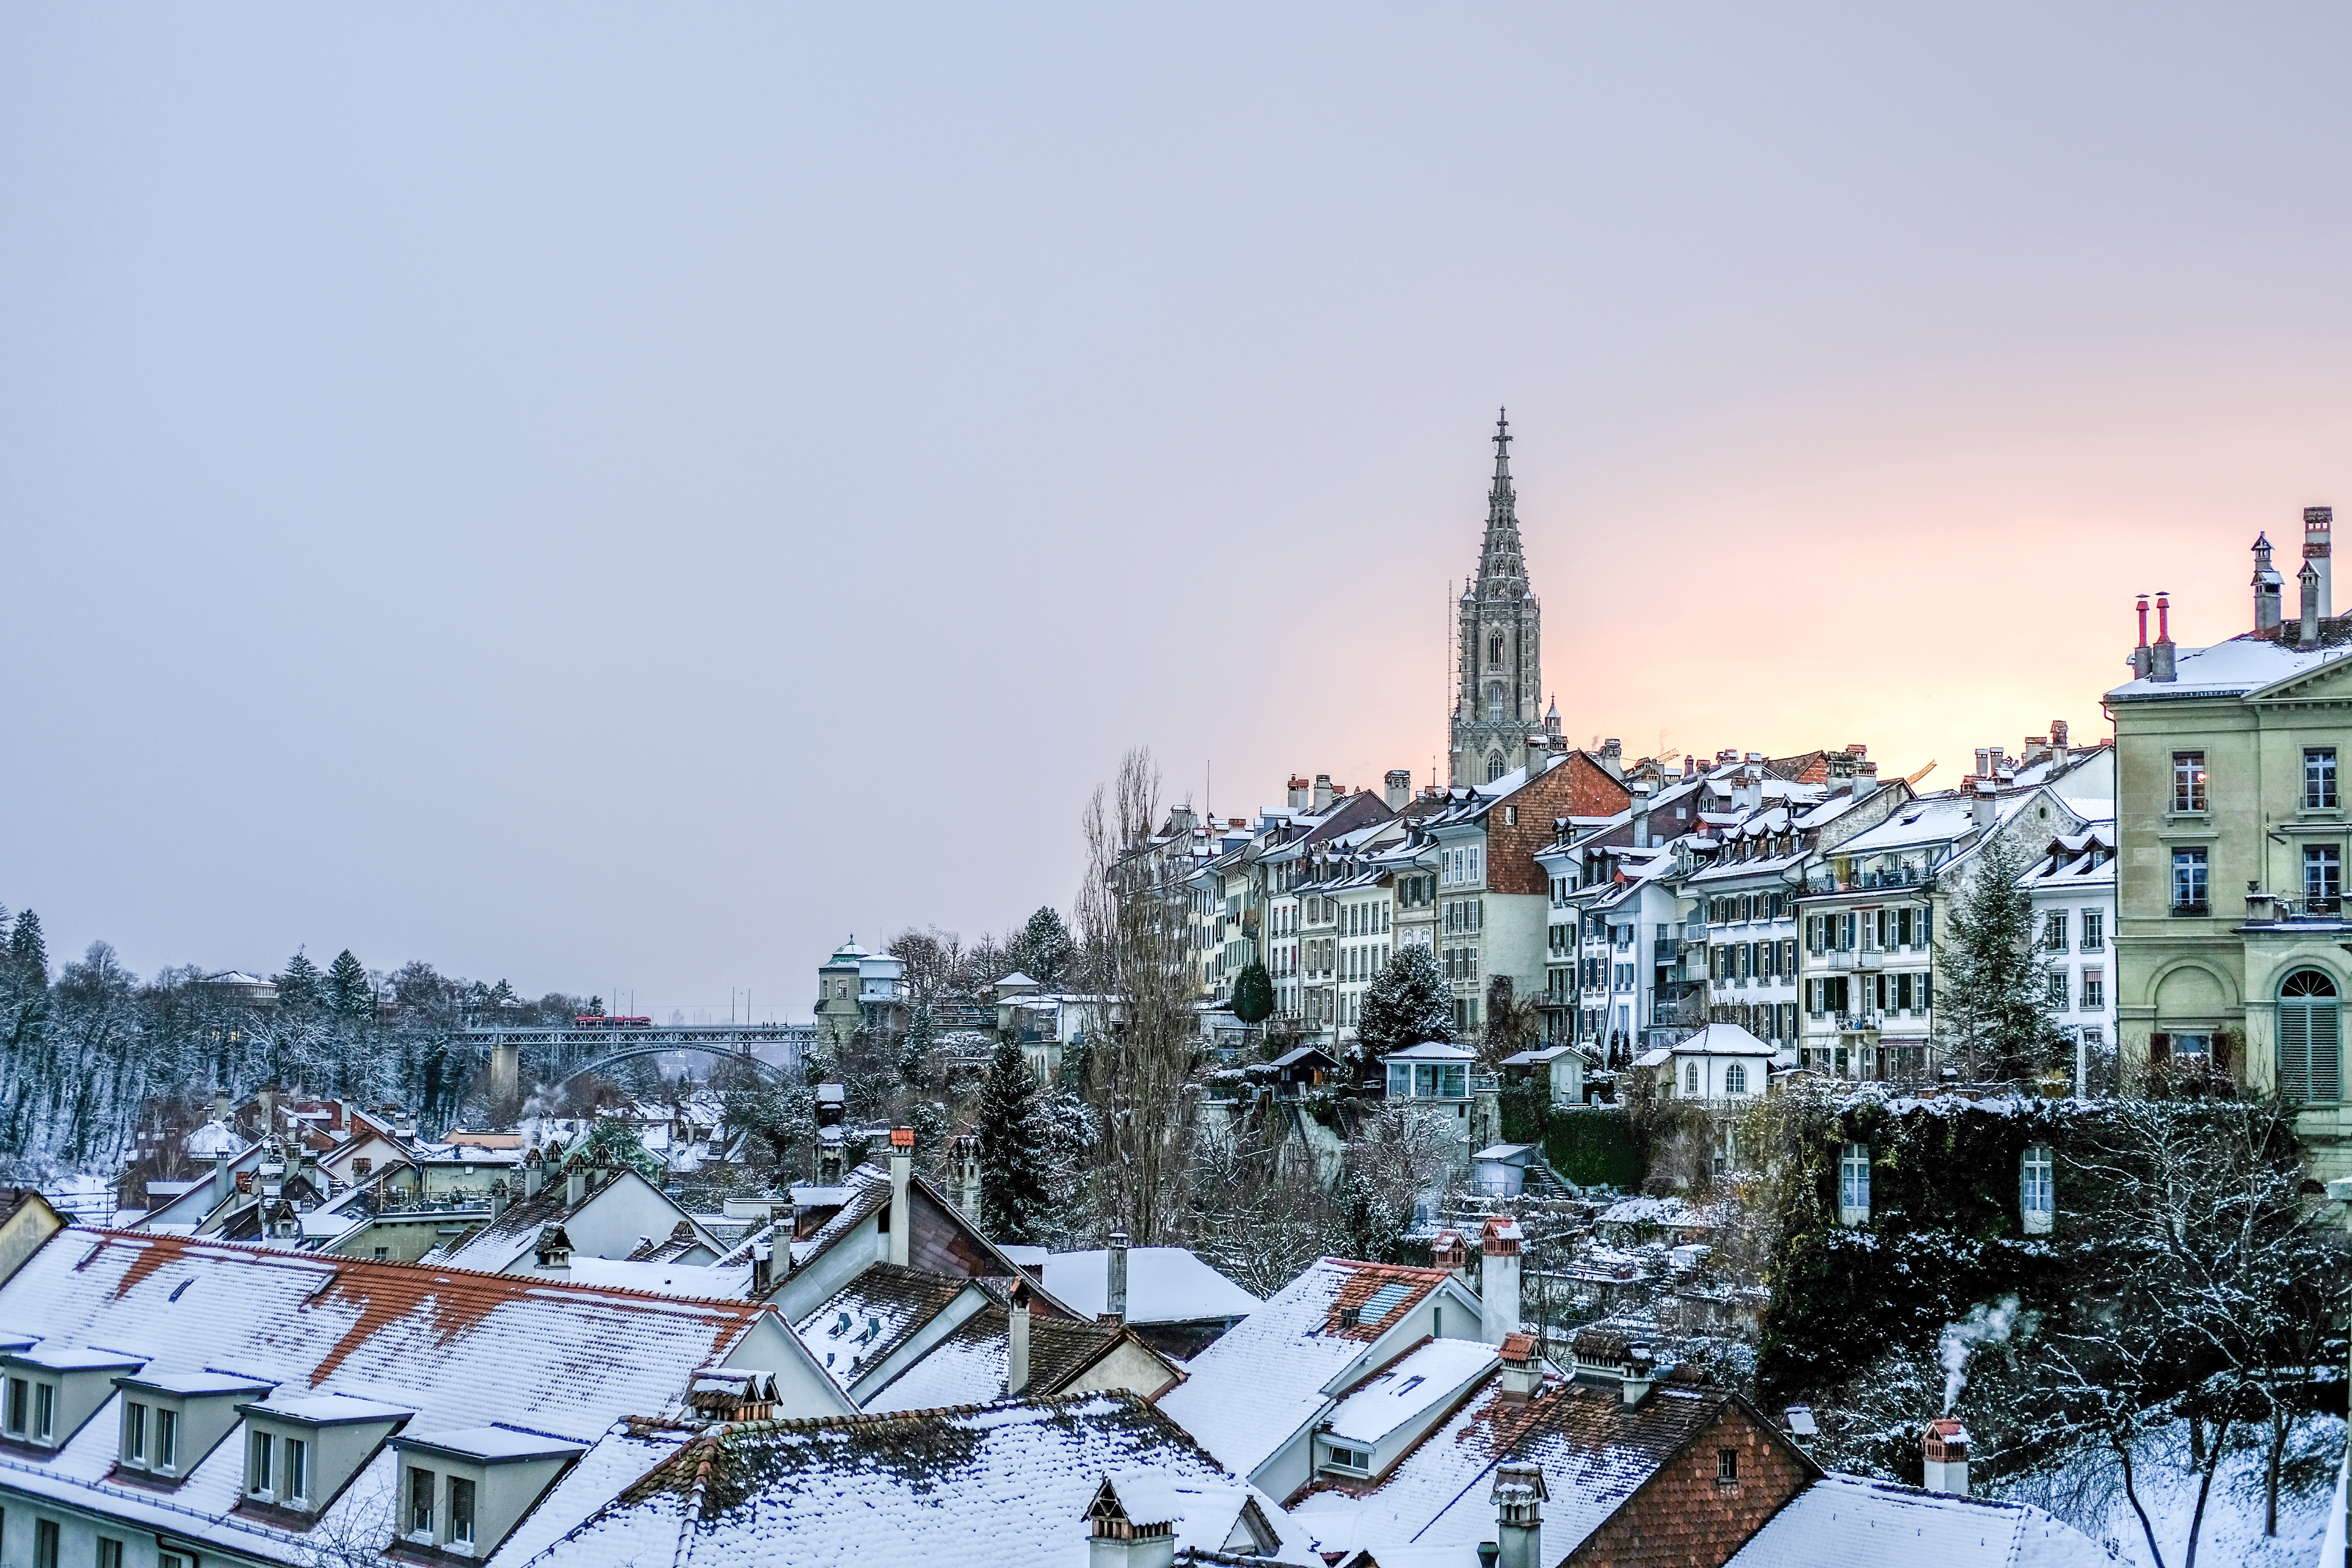 Красивый город со старыми зданиями под свежевыпавшим снегом